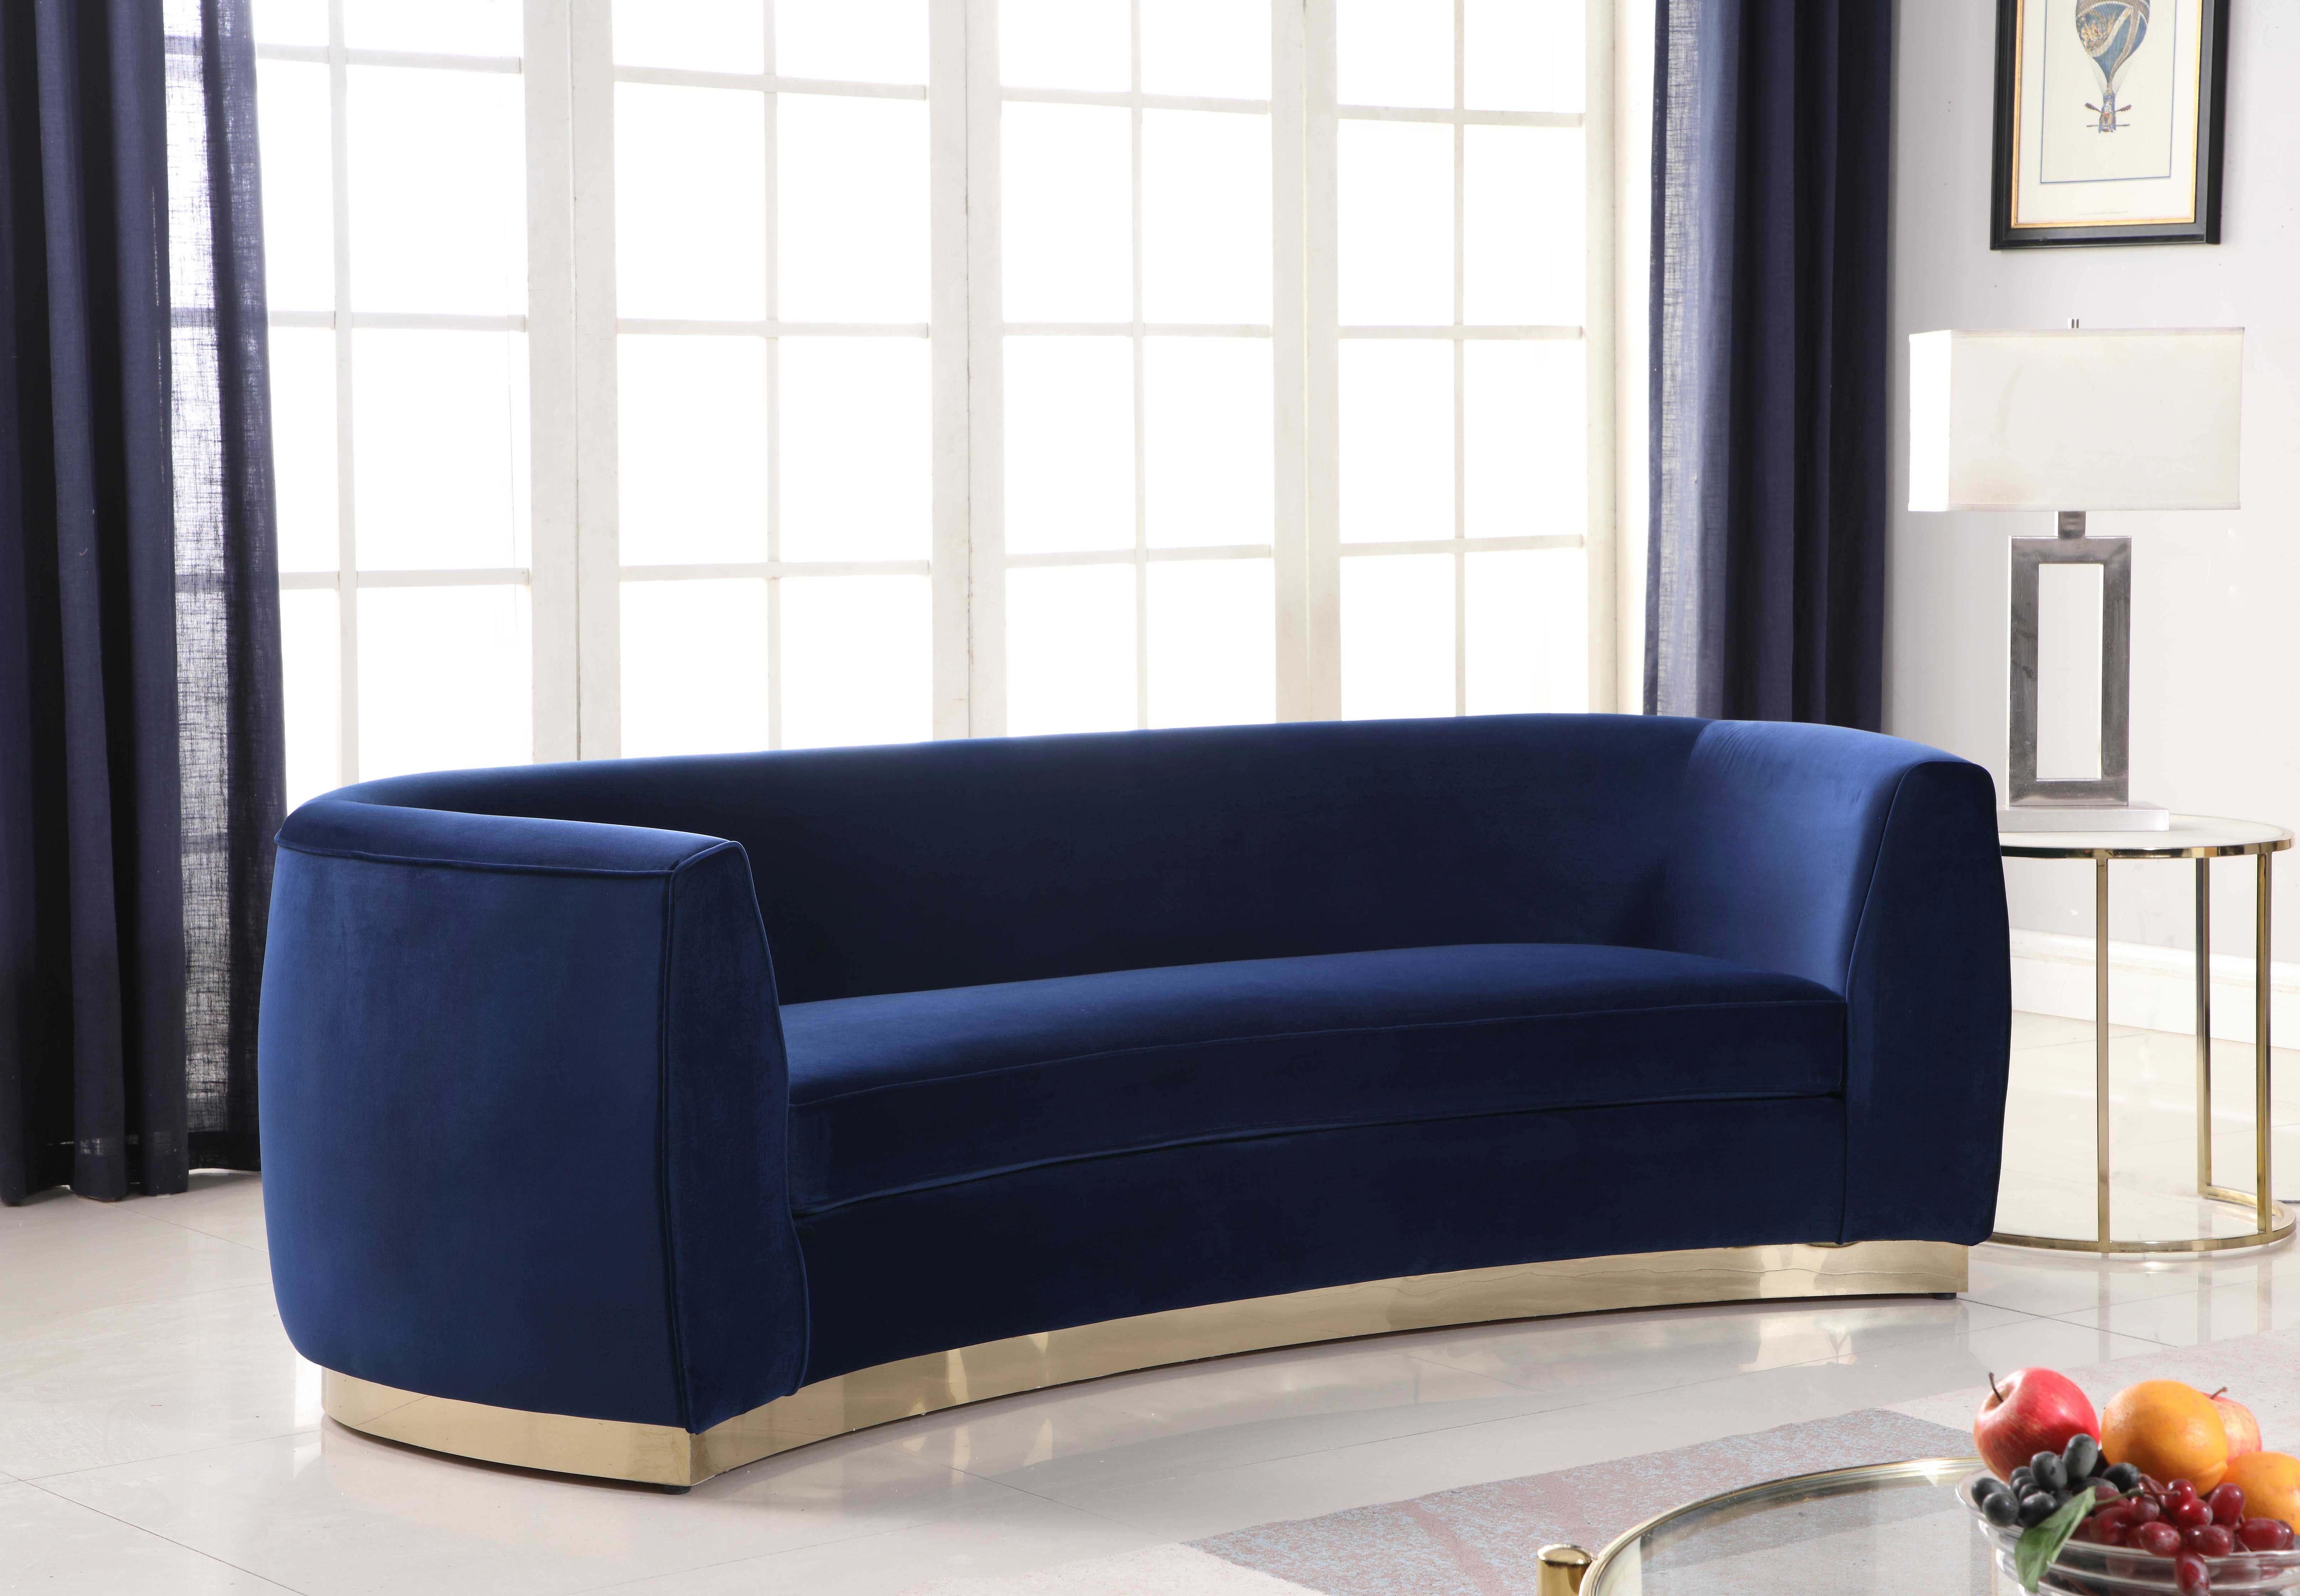 

    
Glam Navy Velvet Sofa Set 3Pcs Julian 620Navy-S Meridian Modern Contemporary
